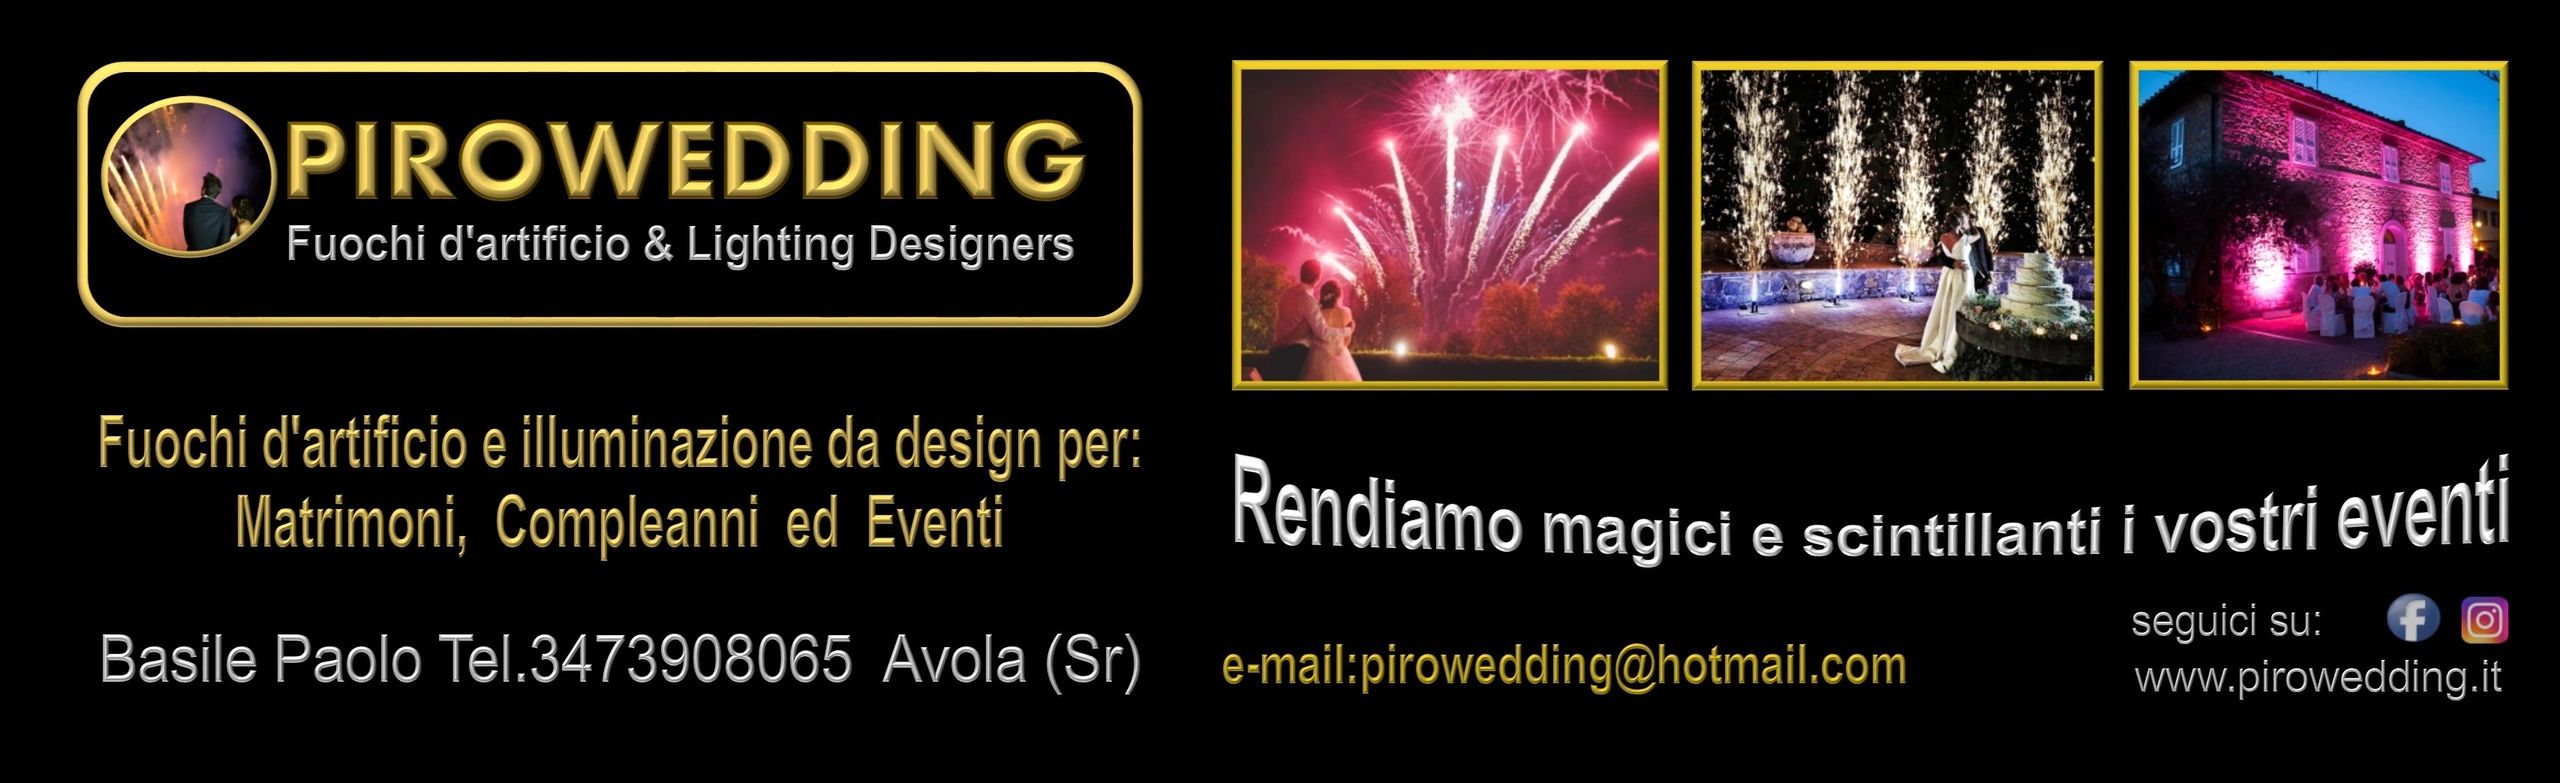 Pirowedding, vendita di fuochi d'artificio, articoli per feste, ingrosso e dettaglio, Italia